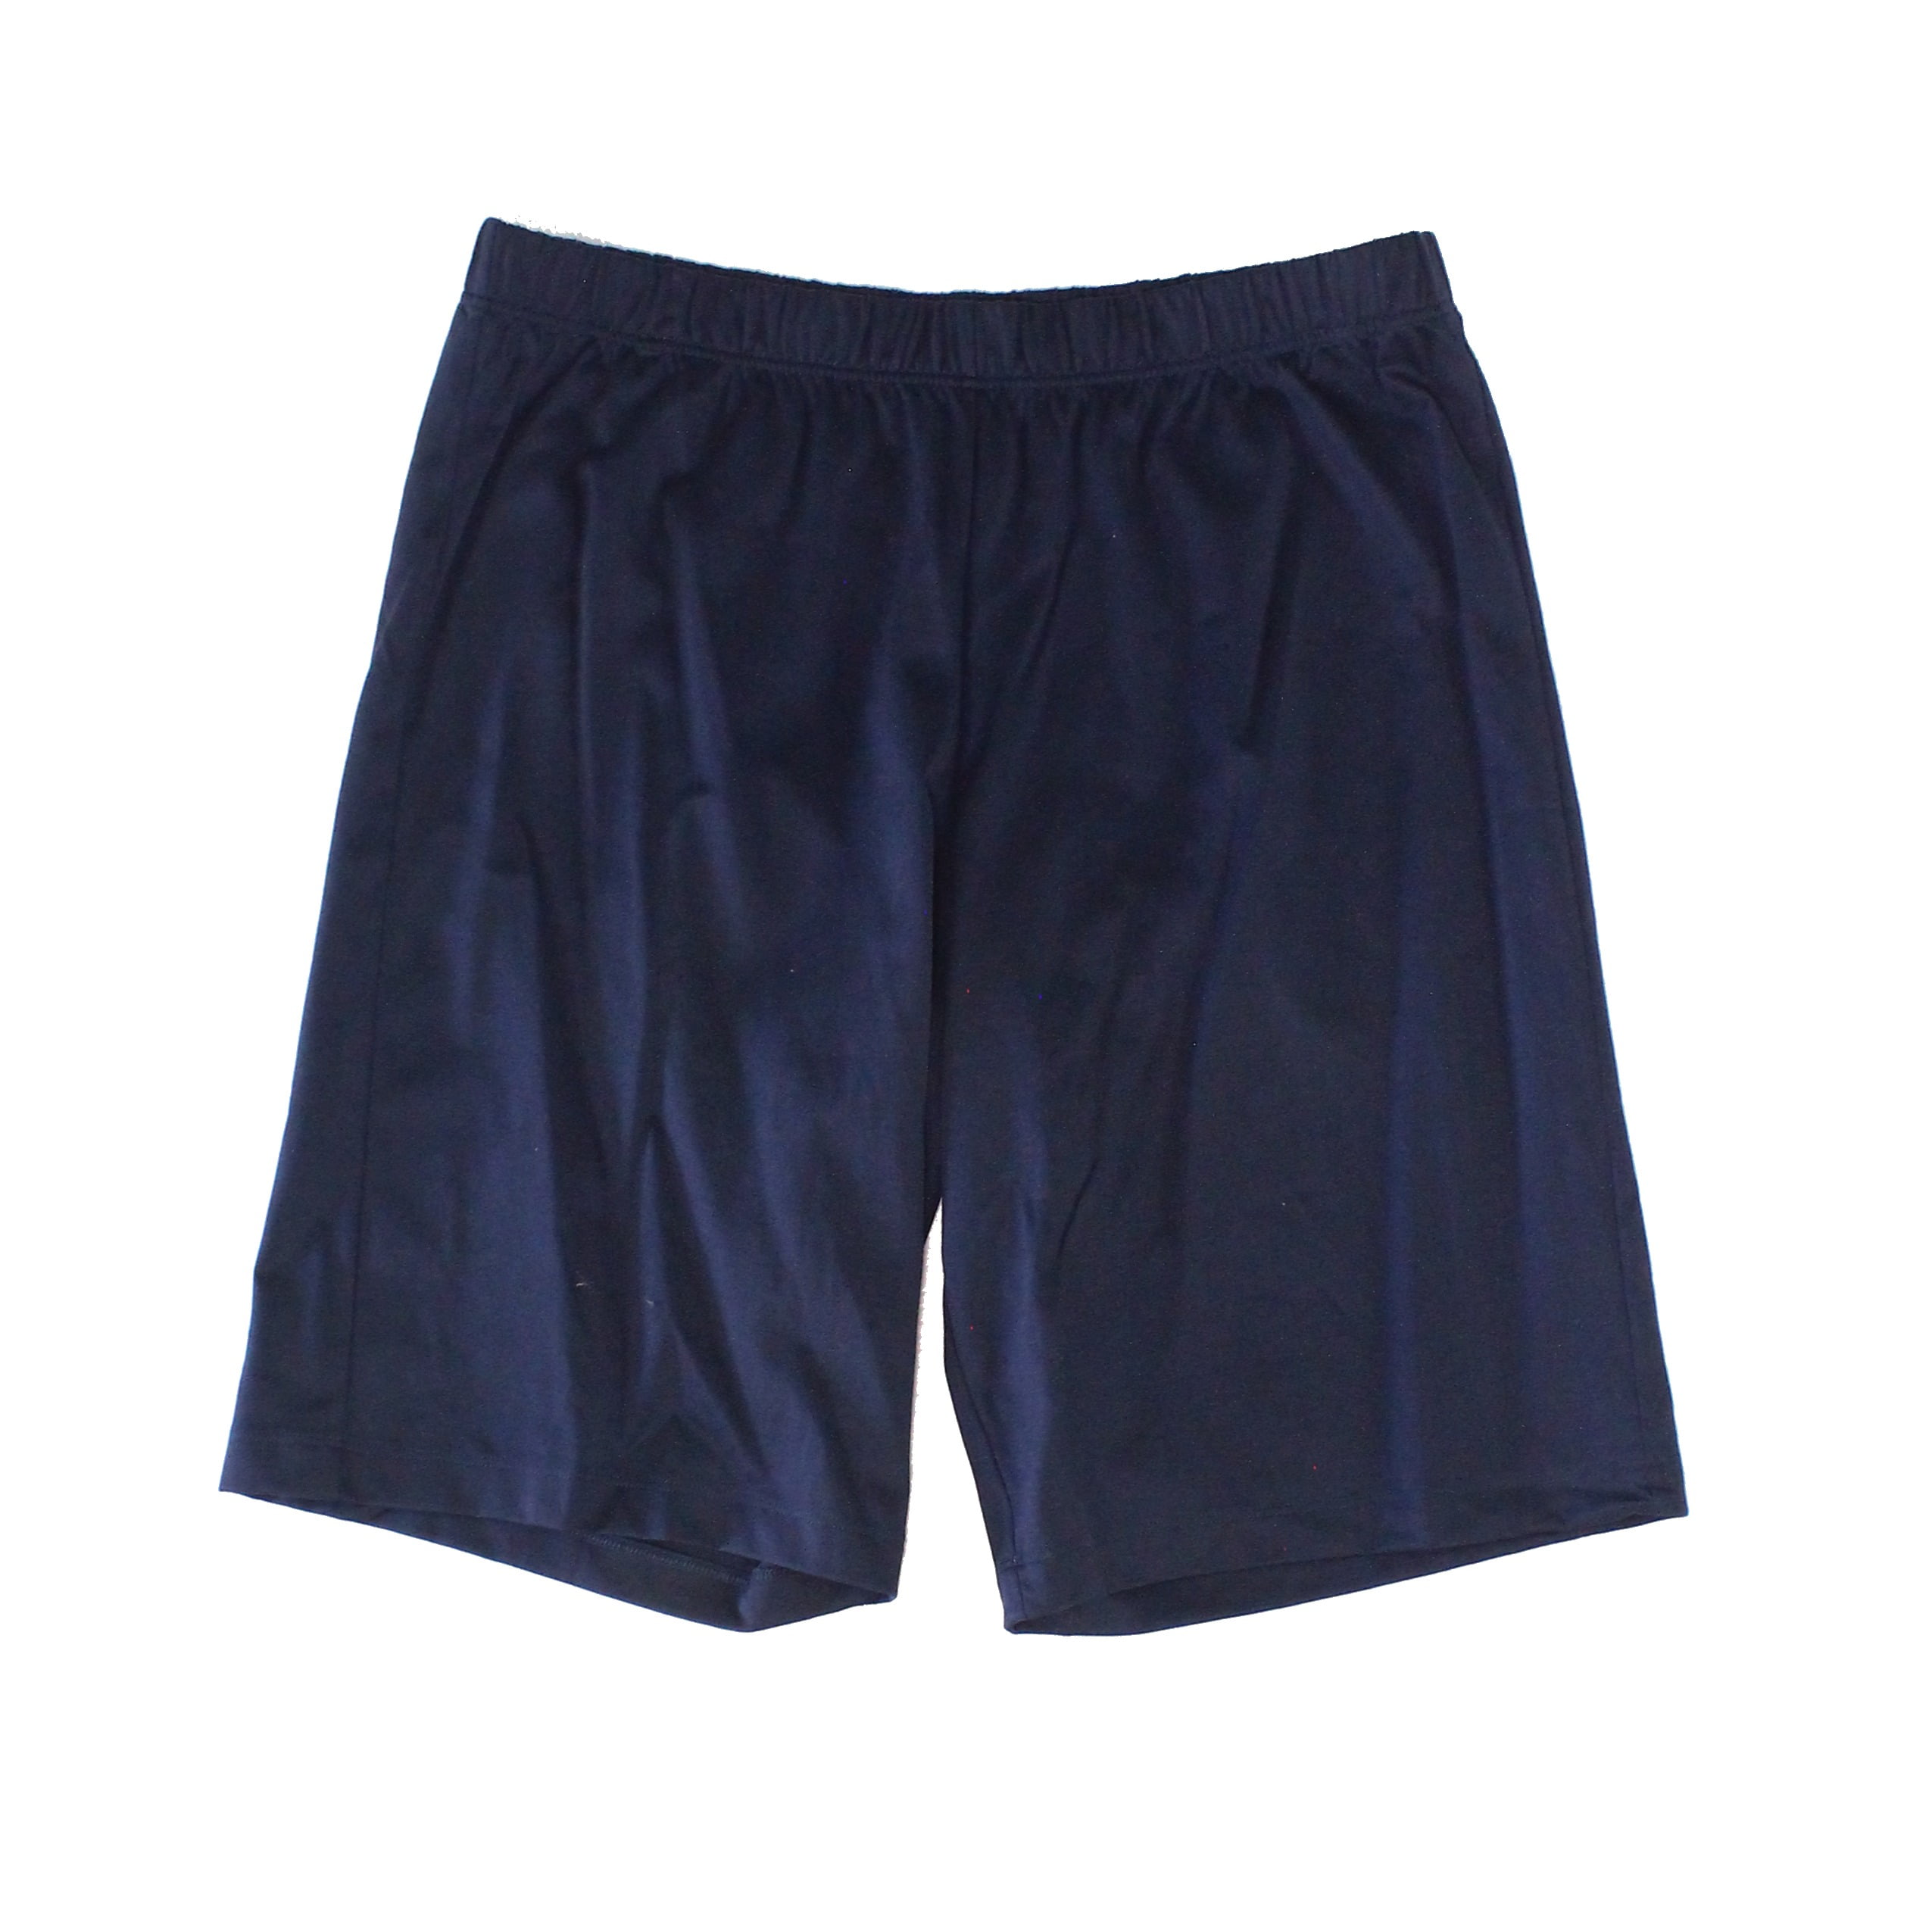 HANRO - Mens Sleepwear Navy Pull-On Woven Sleep Shorts XL - Walmart.com ...